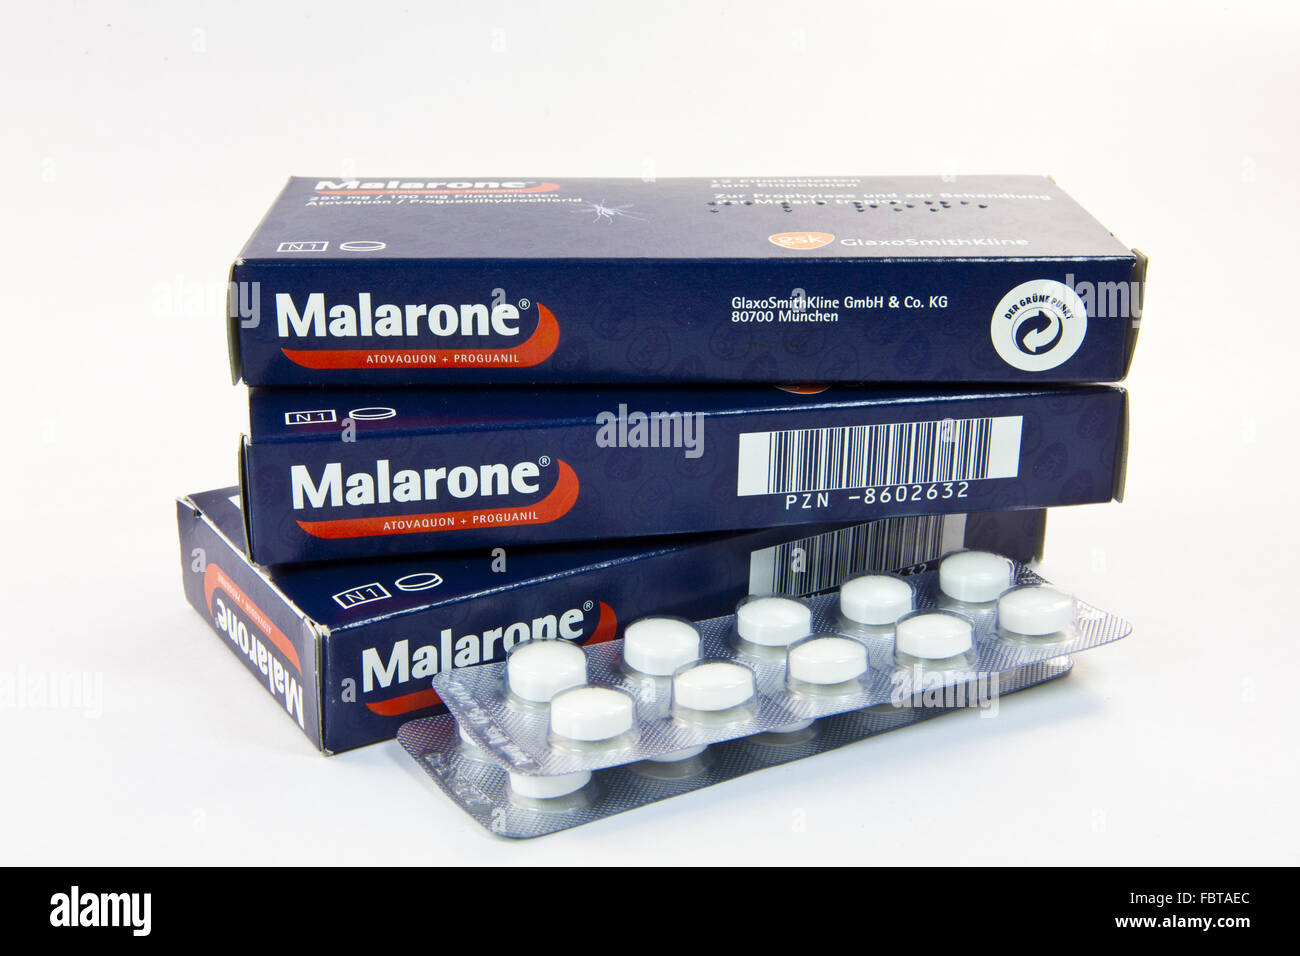 La malaria Malerone farmaco Foto Stock